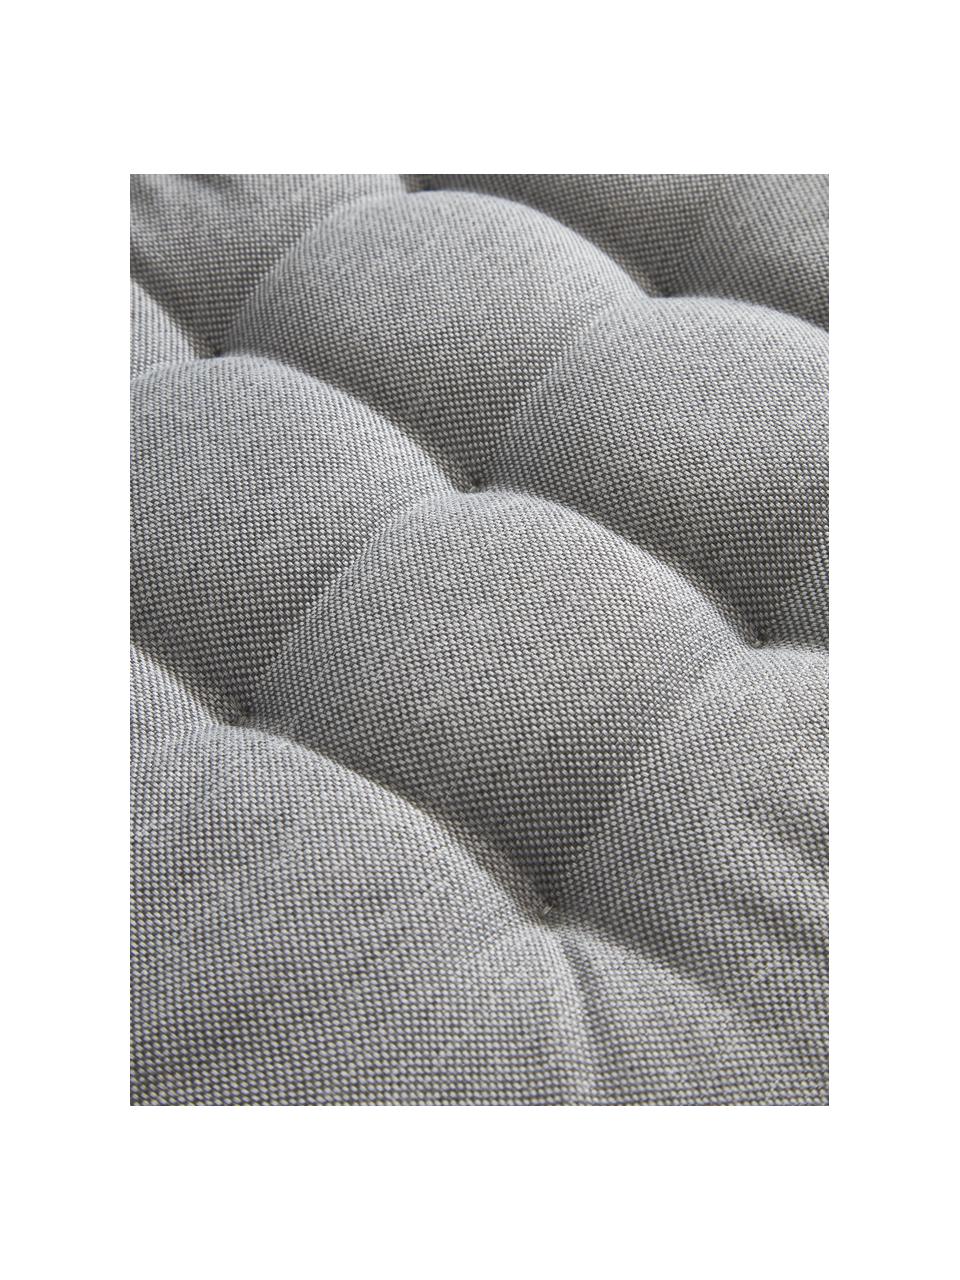 Outdoor-Sitzkissen Olef in Grau, 100 % Baumwolle, Grau, B 40 x L 40 cm